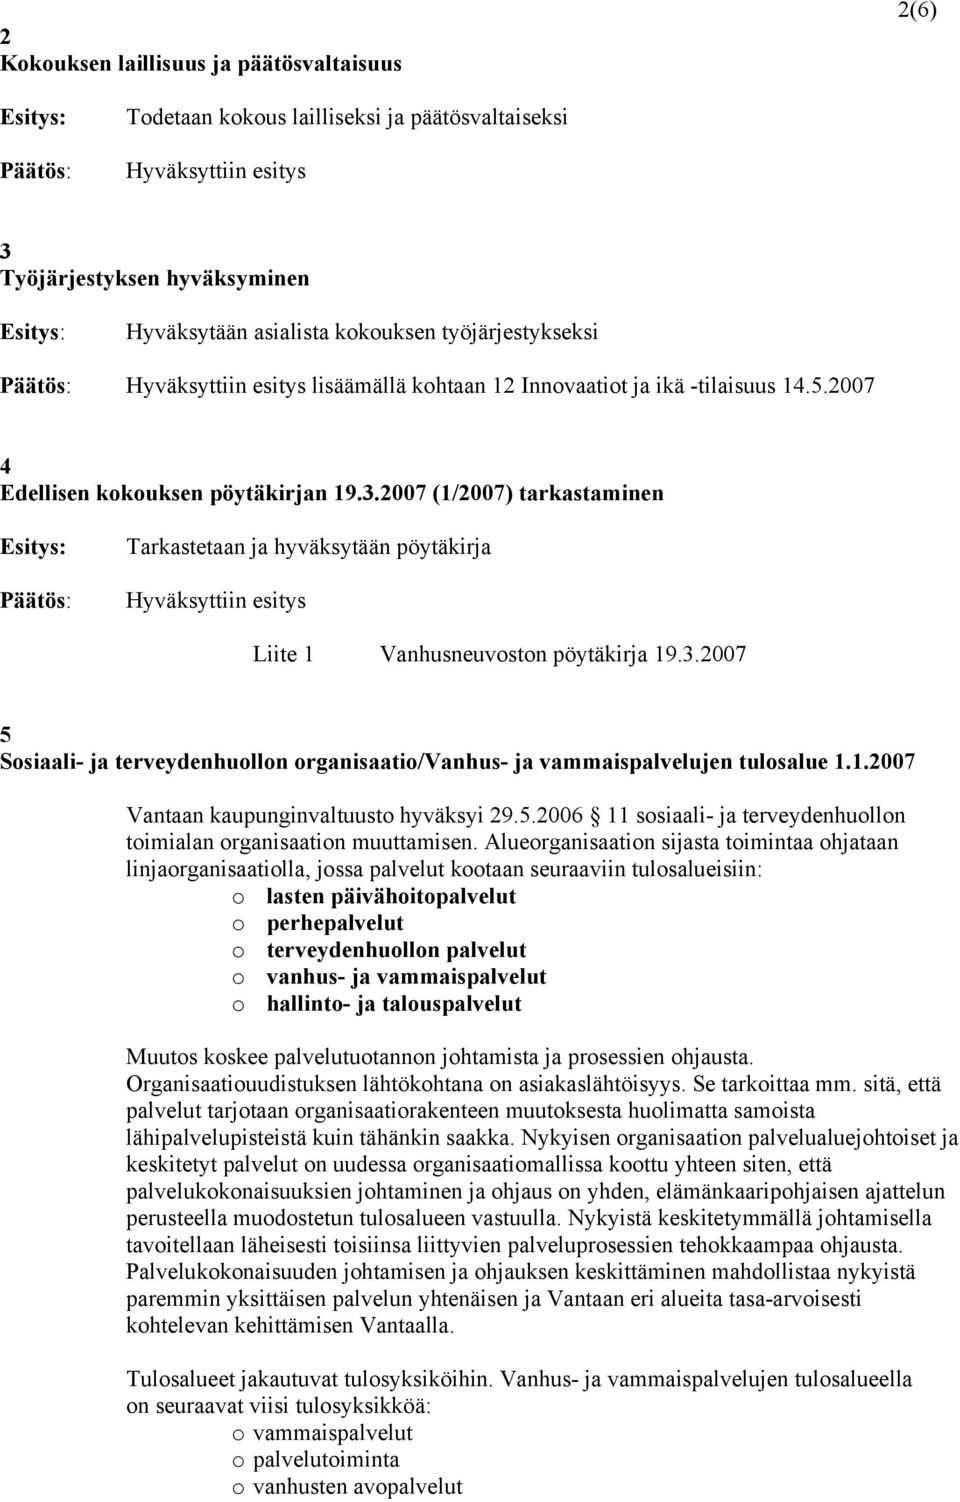 1.2007 Vantaan kaupunginvaltuusto hyväksyi 29.5.2006 11 sosiaali- ja terveydenhuollon toimialan organisaation muuttamisen.